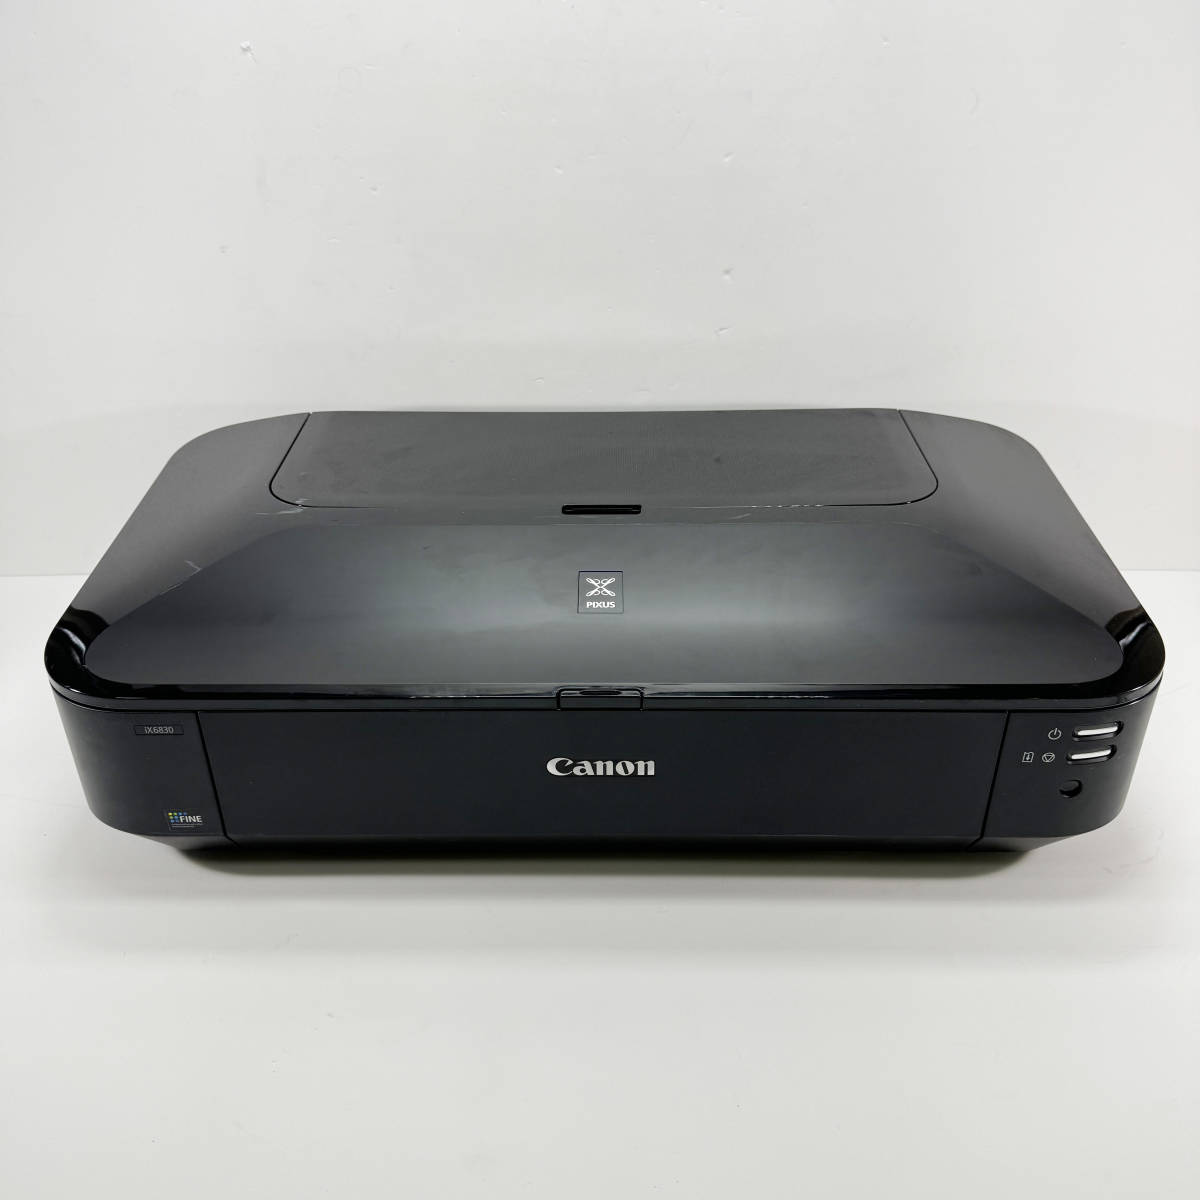 Canon キャノン IX6830 A3対応インクジェットプリンター_画像1